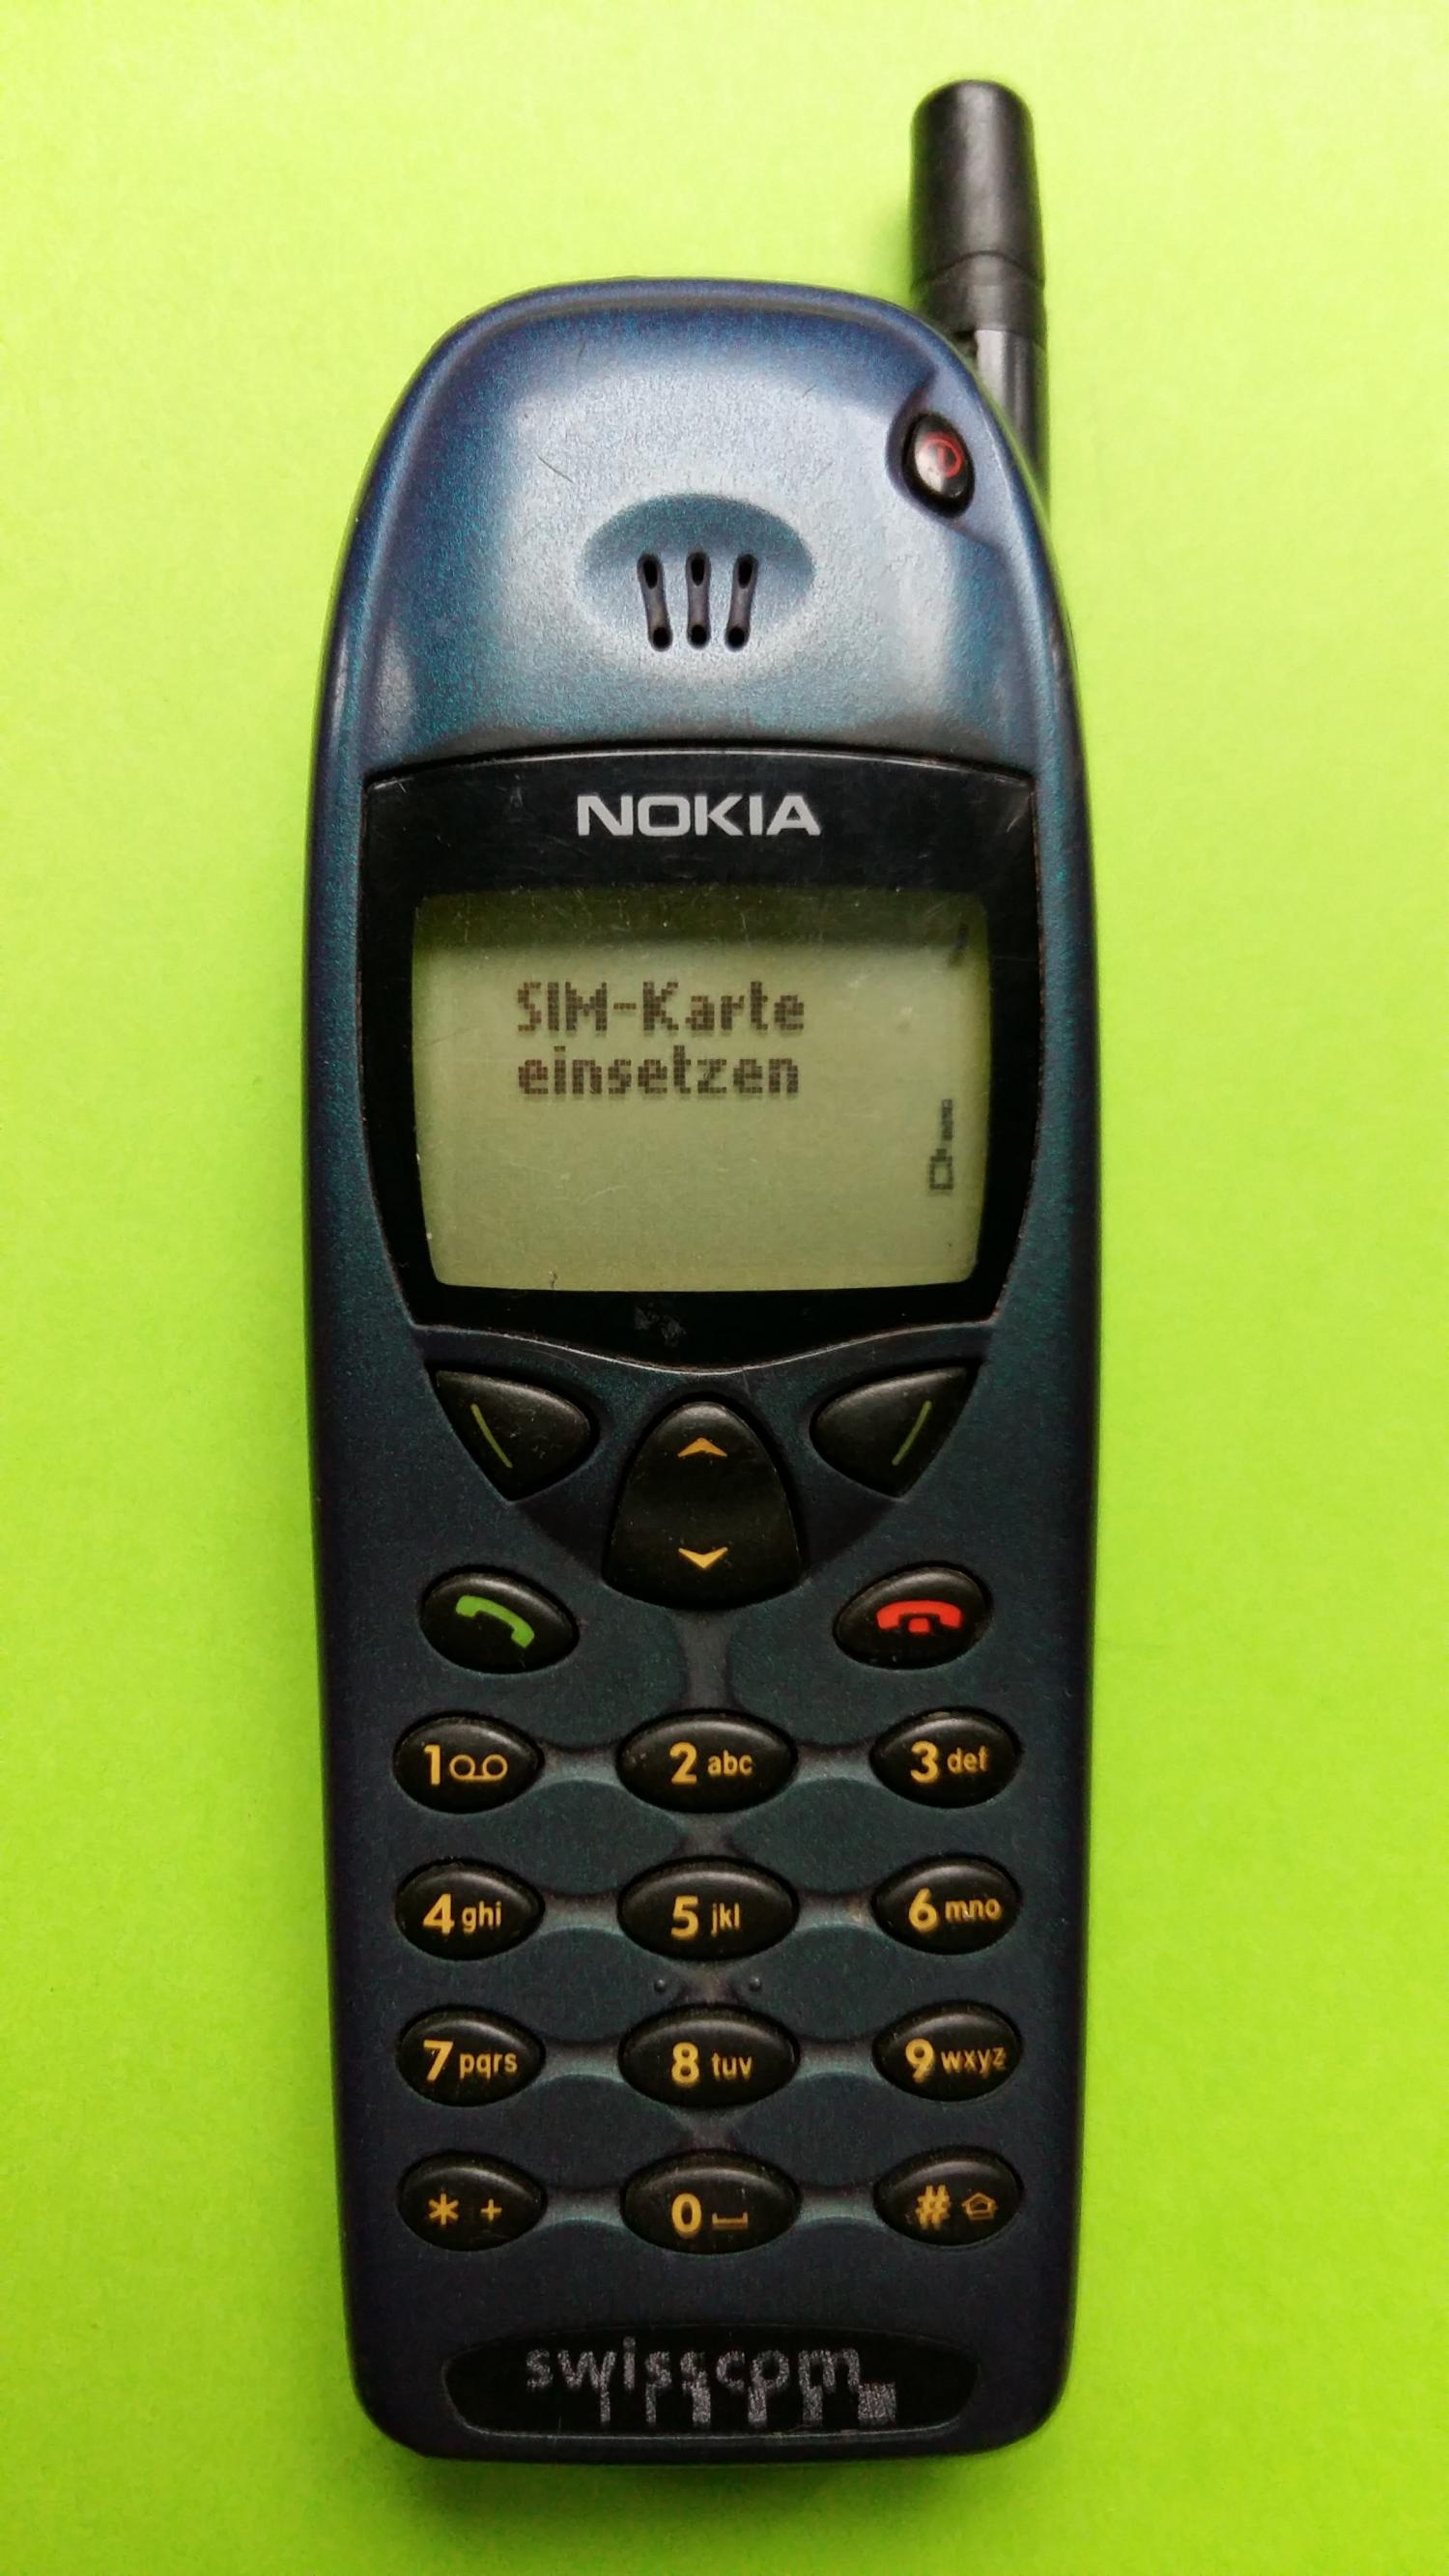 image-7304975-Nokia 6110 (6)1.jpg